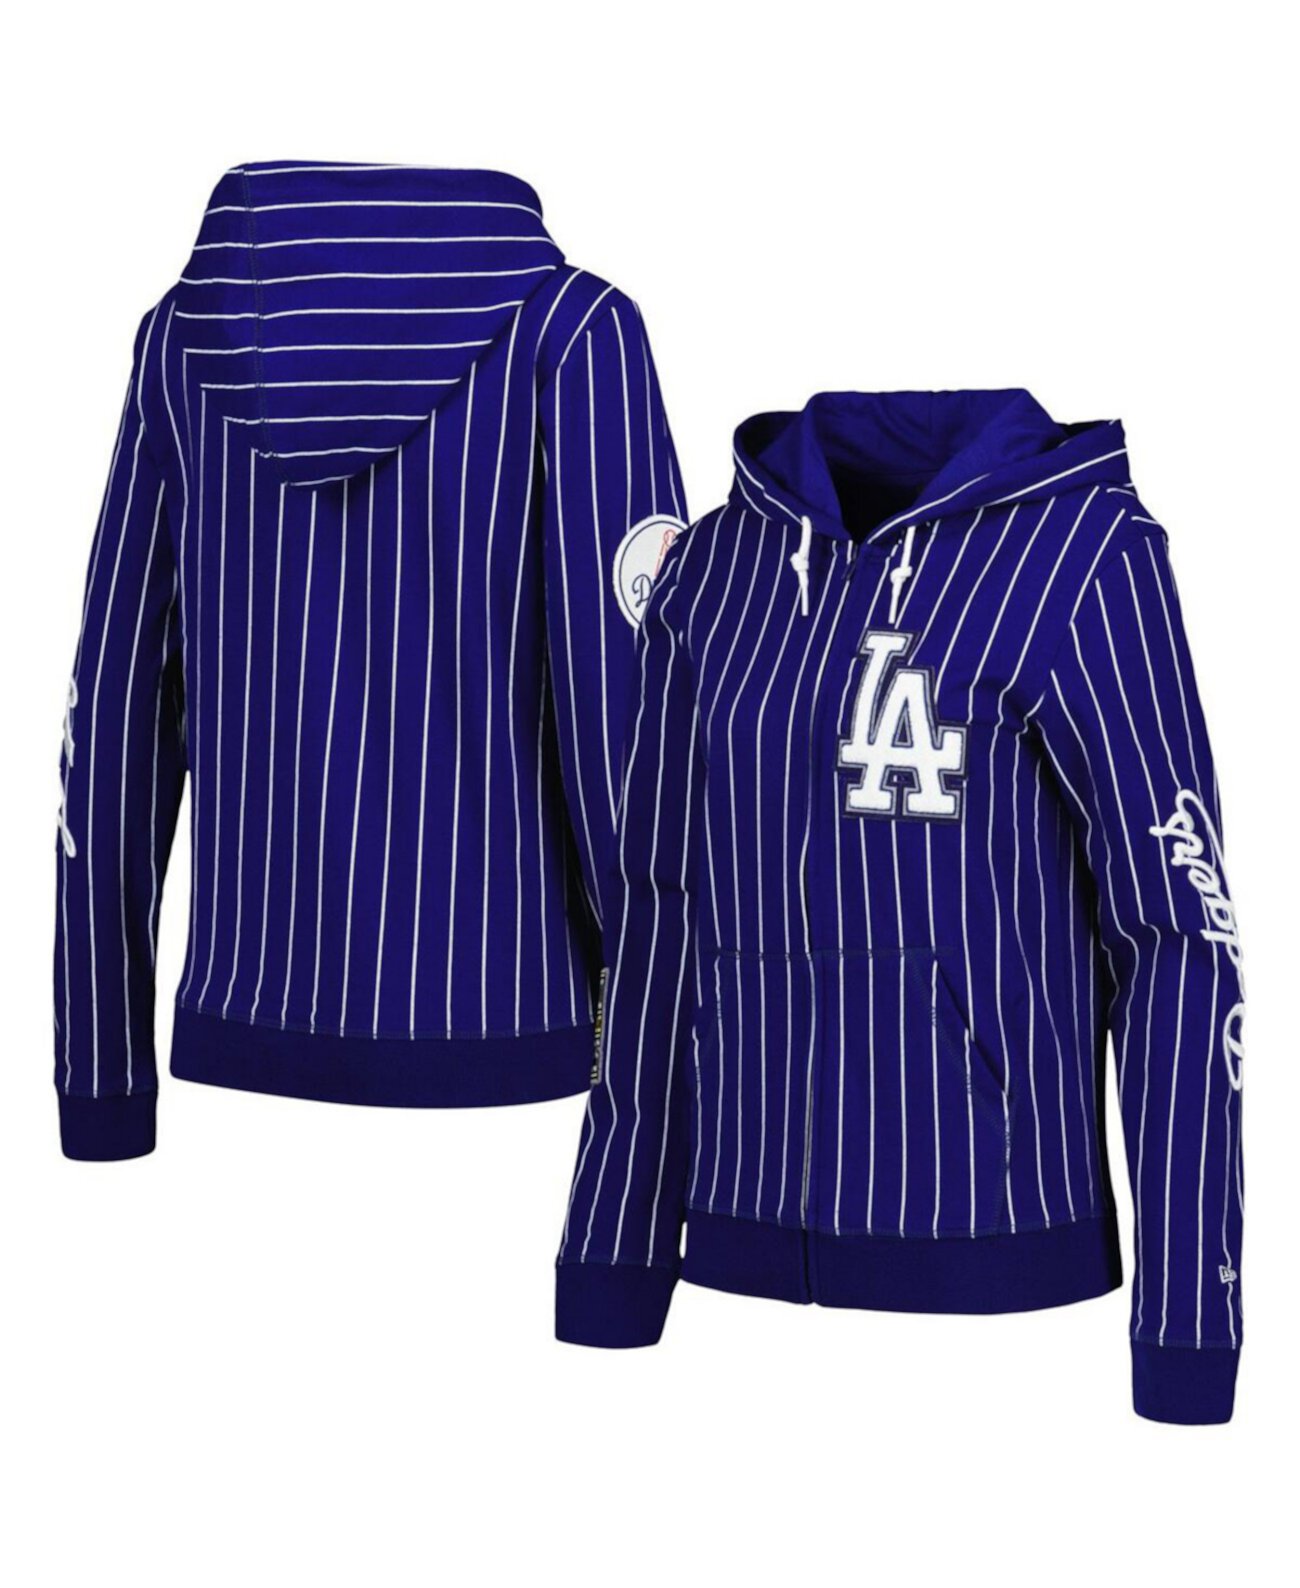 Женская куртка Royal Los Angeles Dodgers в тонкую полоску с молнией во всю длину New Era